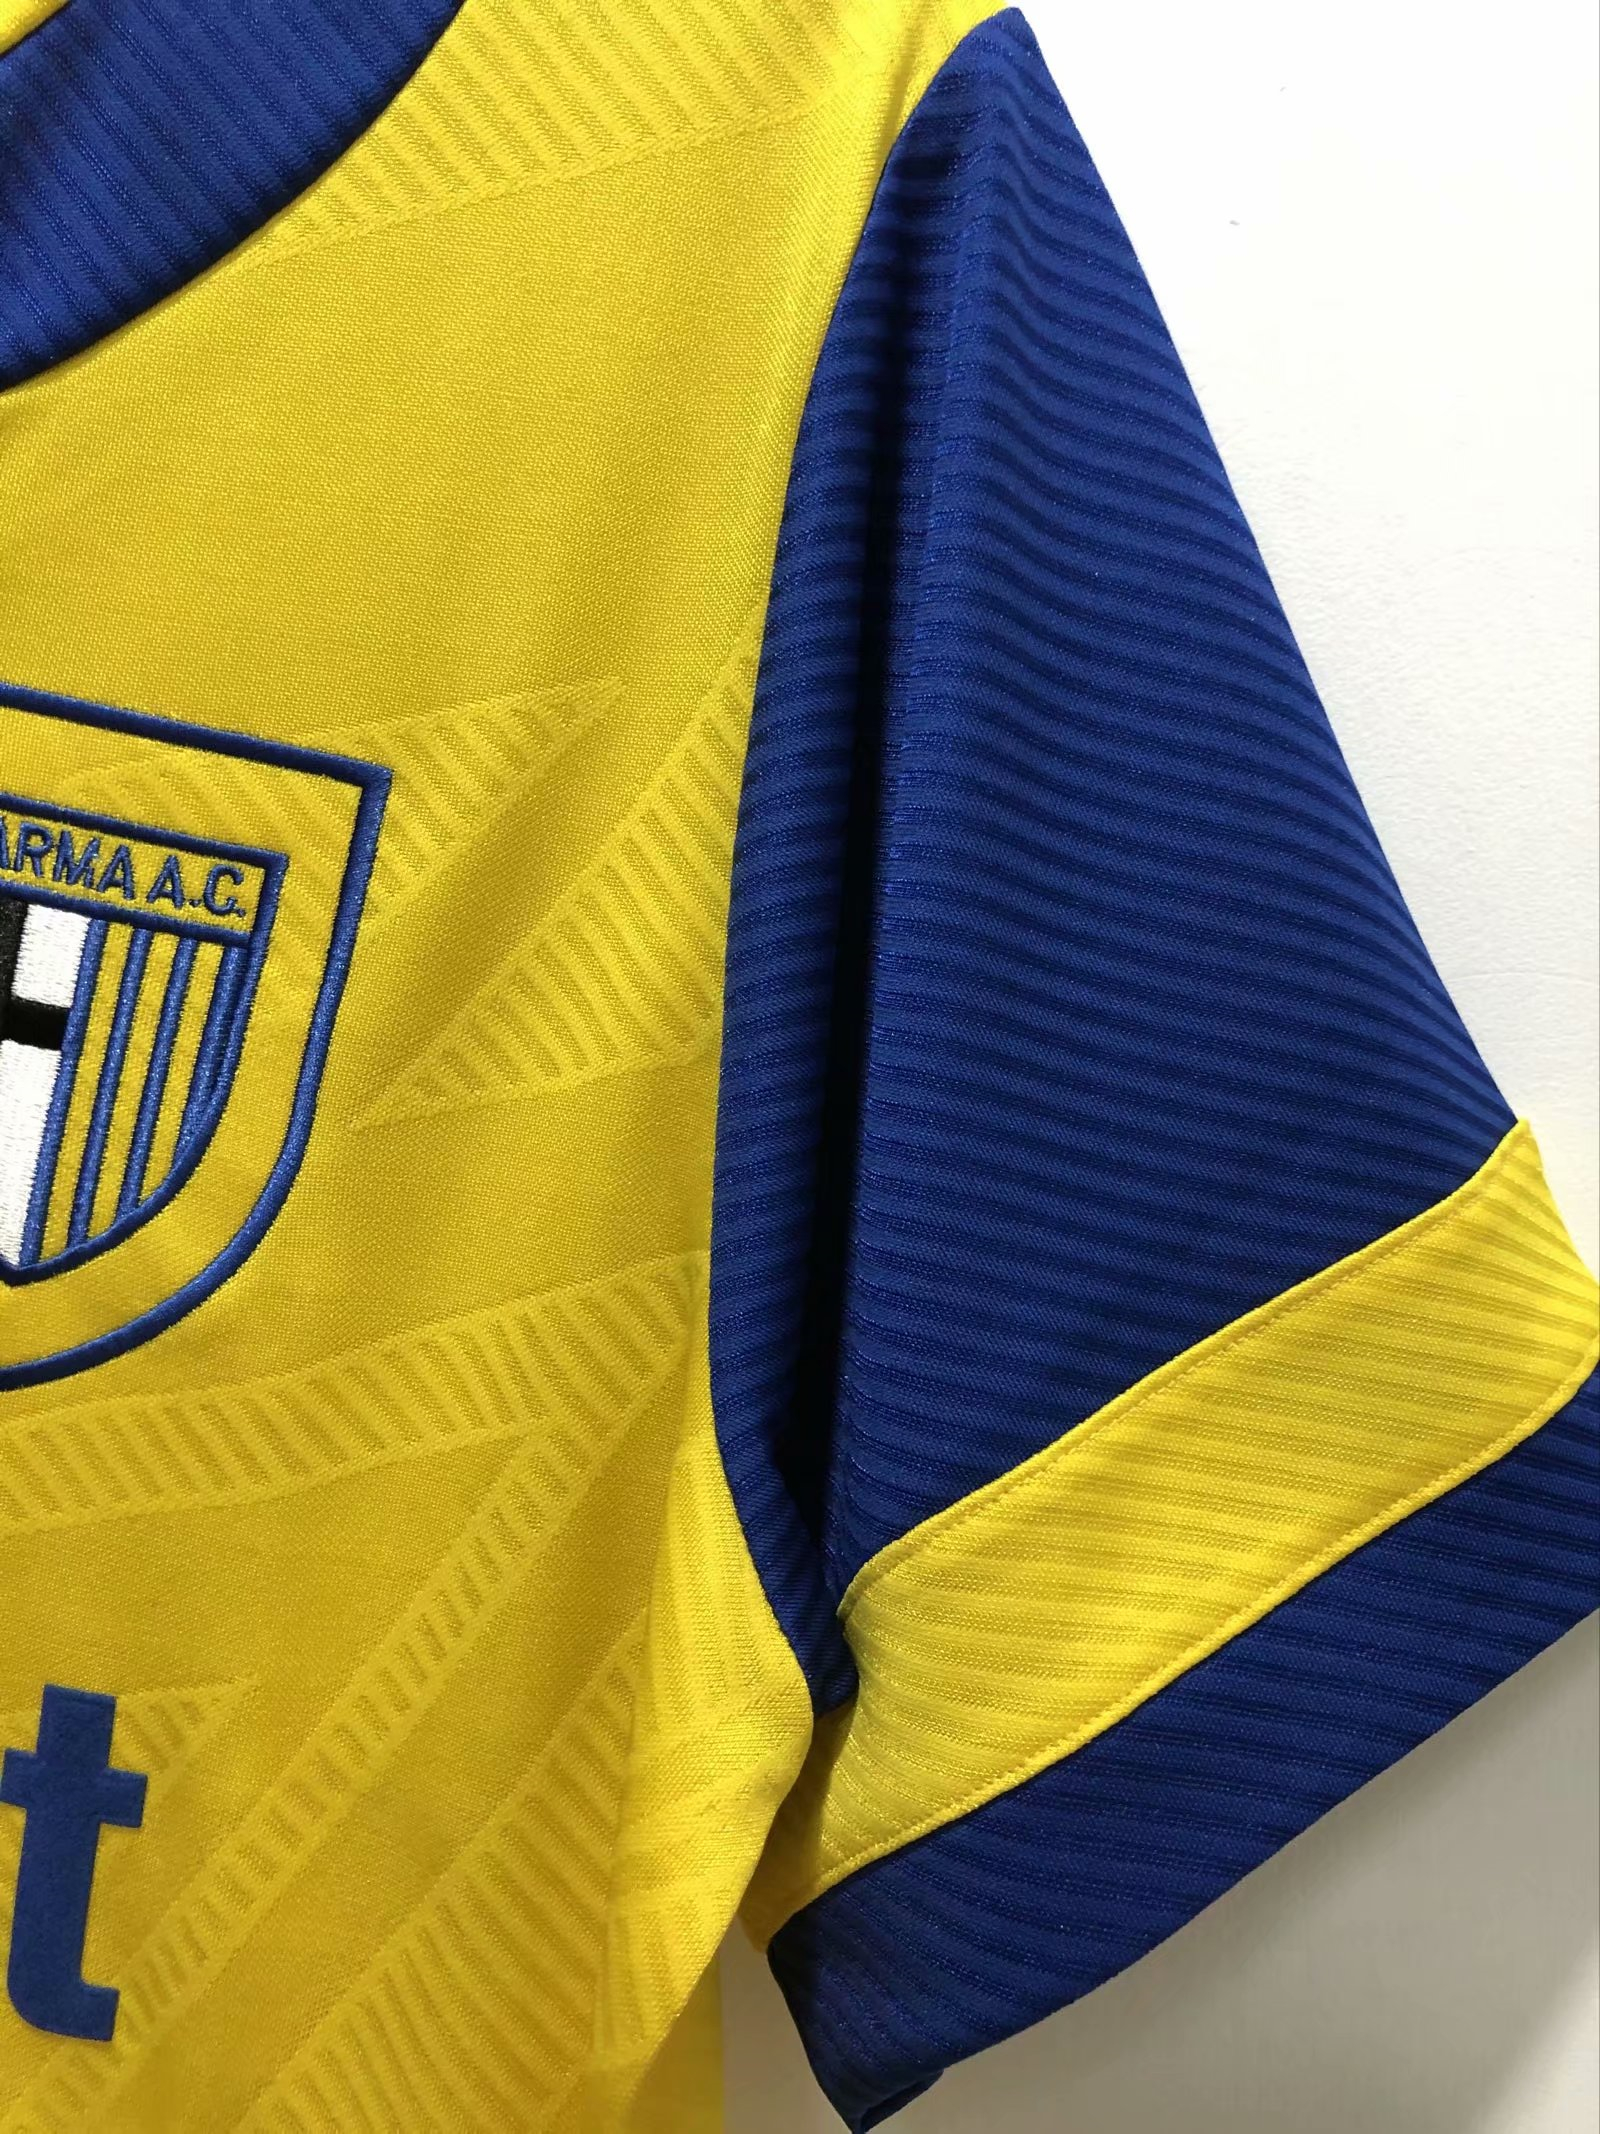 Men's Parma Calcio Retro Home Jersey 1993-1995